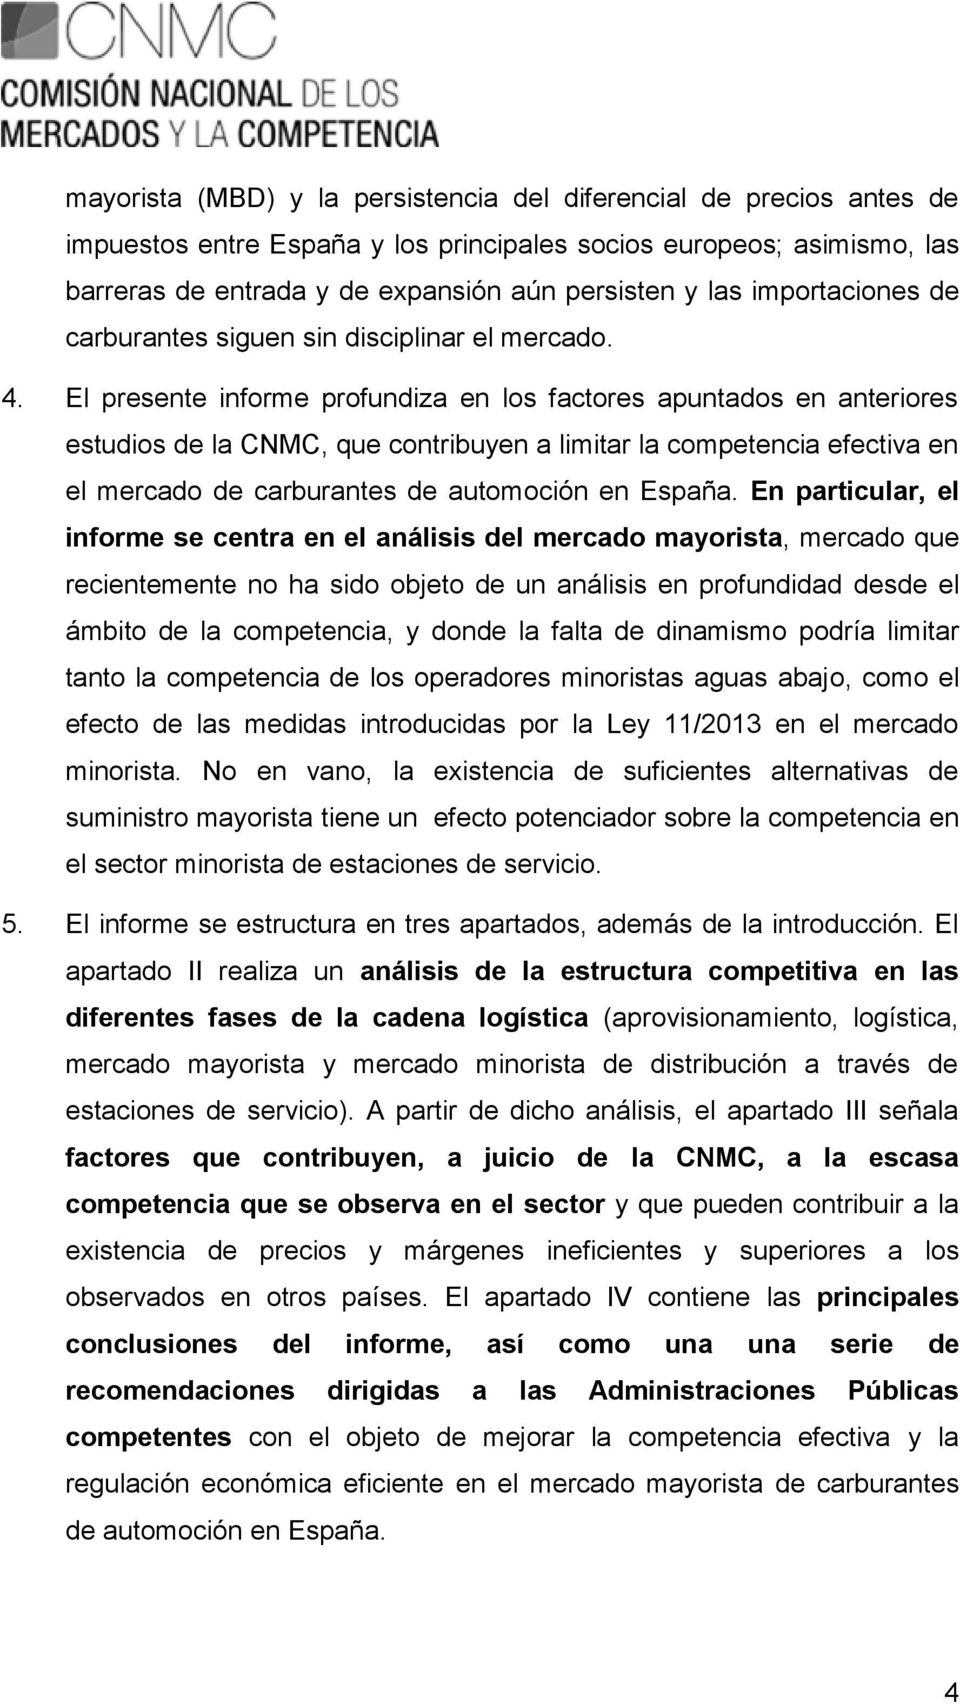 El presente informe profundiza en los factores apuntados en anteriores estudios de la CNMC, que contribuyen a limitar la competencia efectiva en el mercado de carburantes de automoción en España.